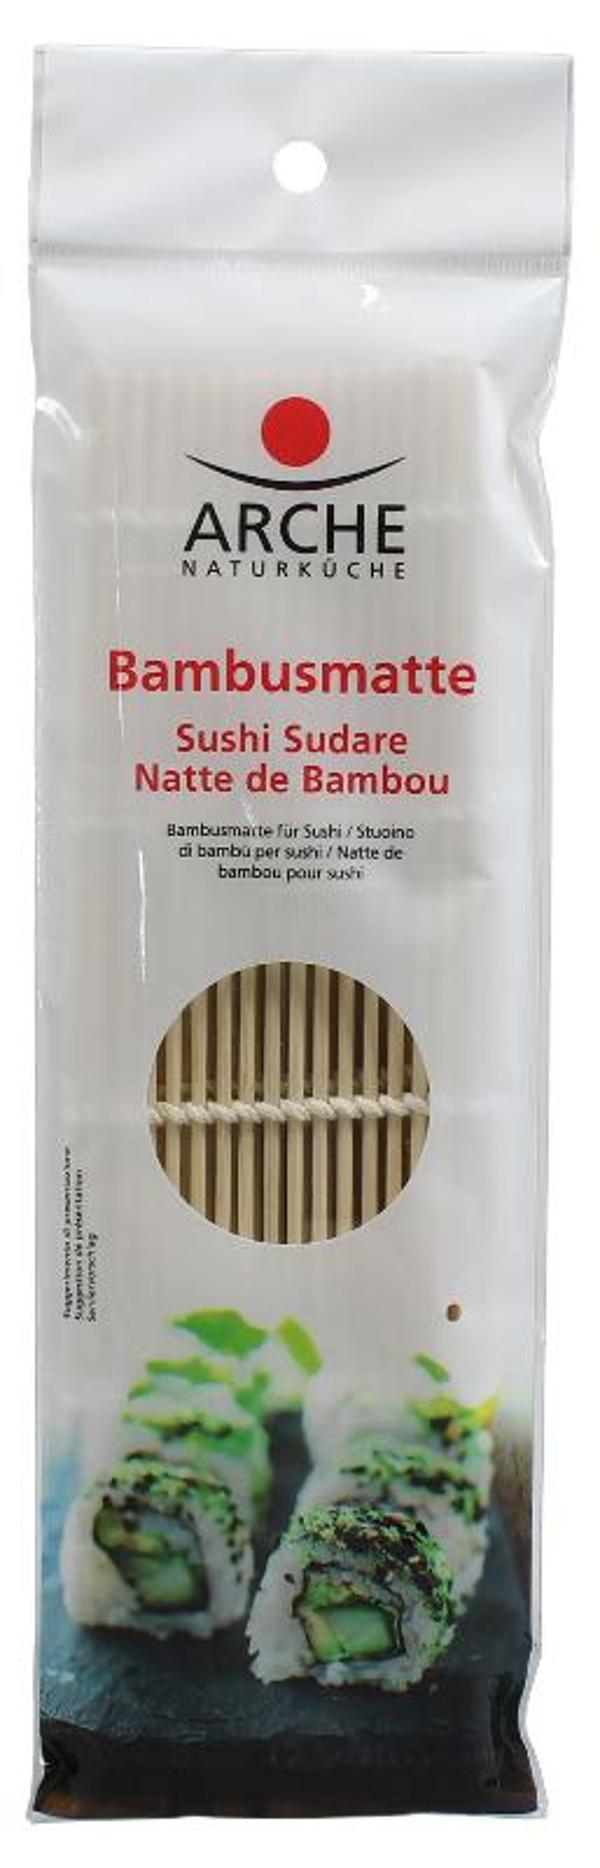 Produktfoto zu Bambusmatte f.Sushi Rollen